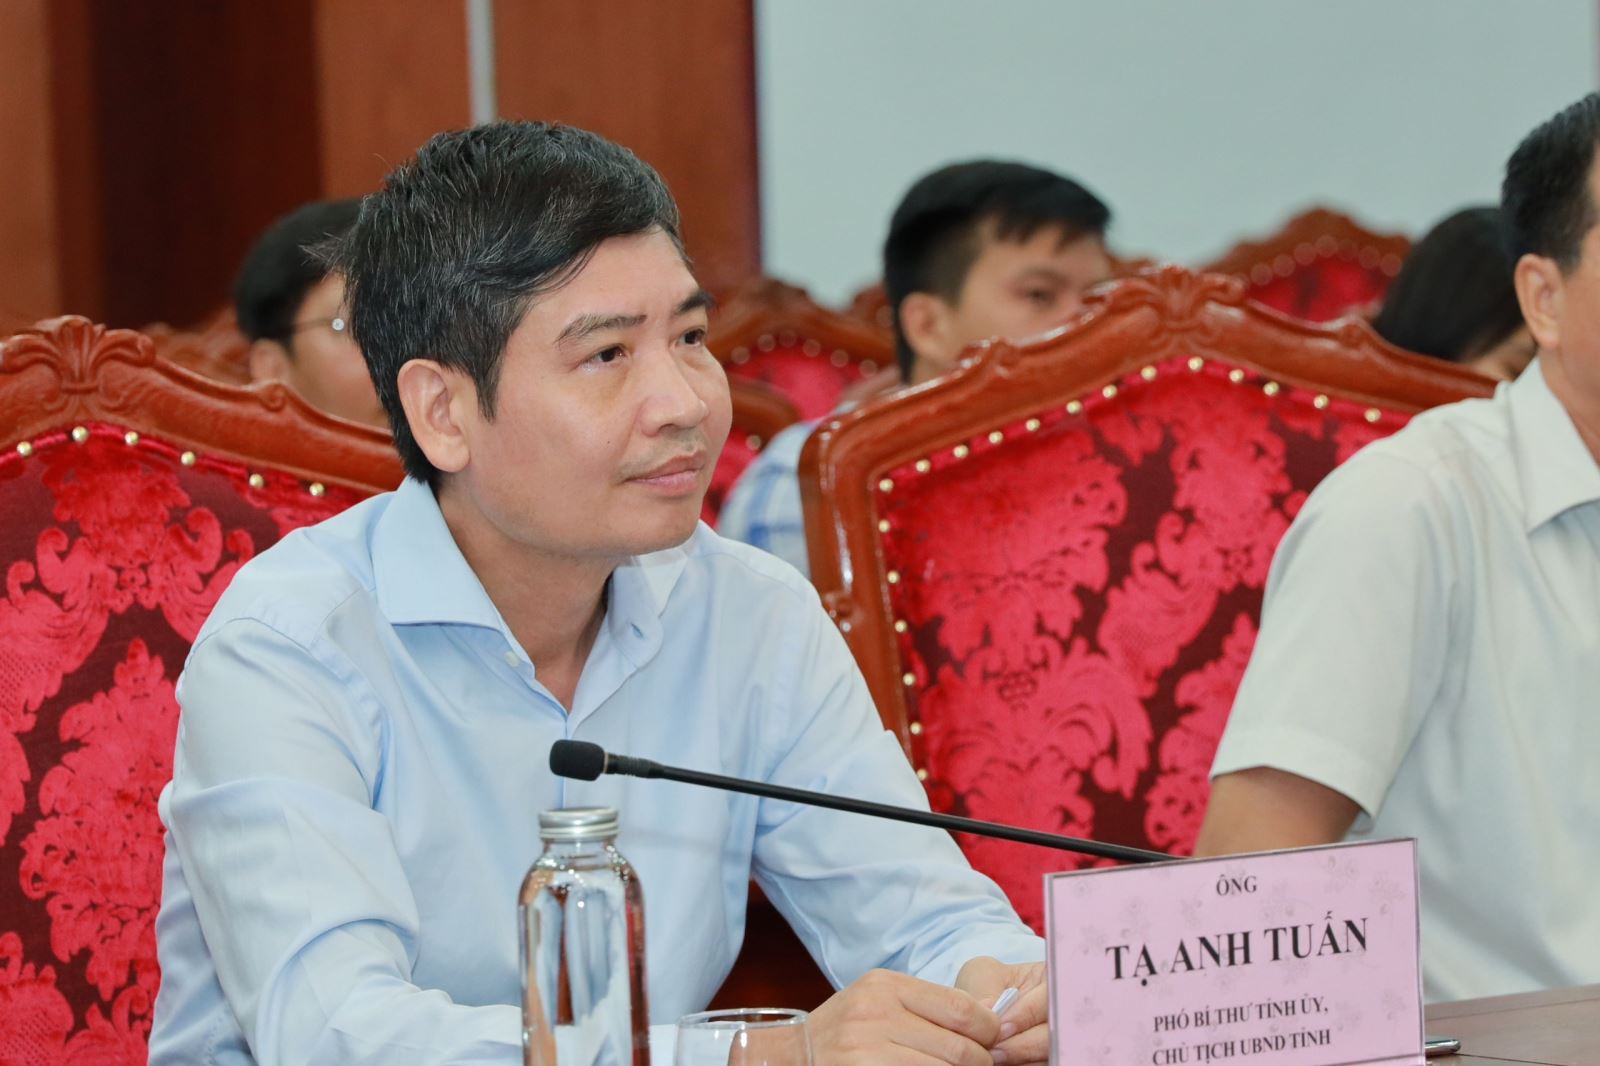 Ông Tạ Anh Tuấn - Chủ tịch UBND tỉnh Phú Yên (Ảnh : Thuonggia24h.vn)